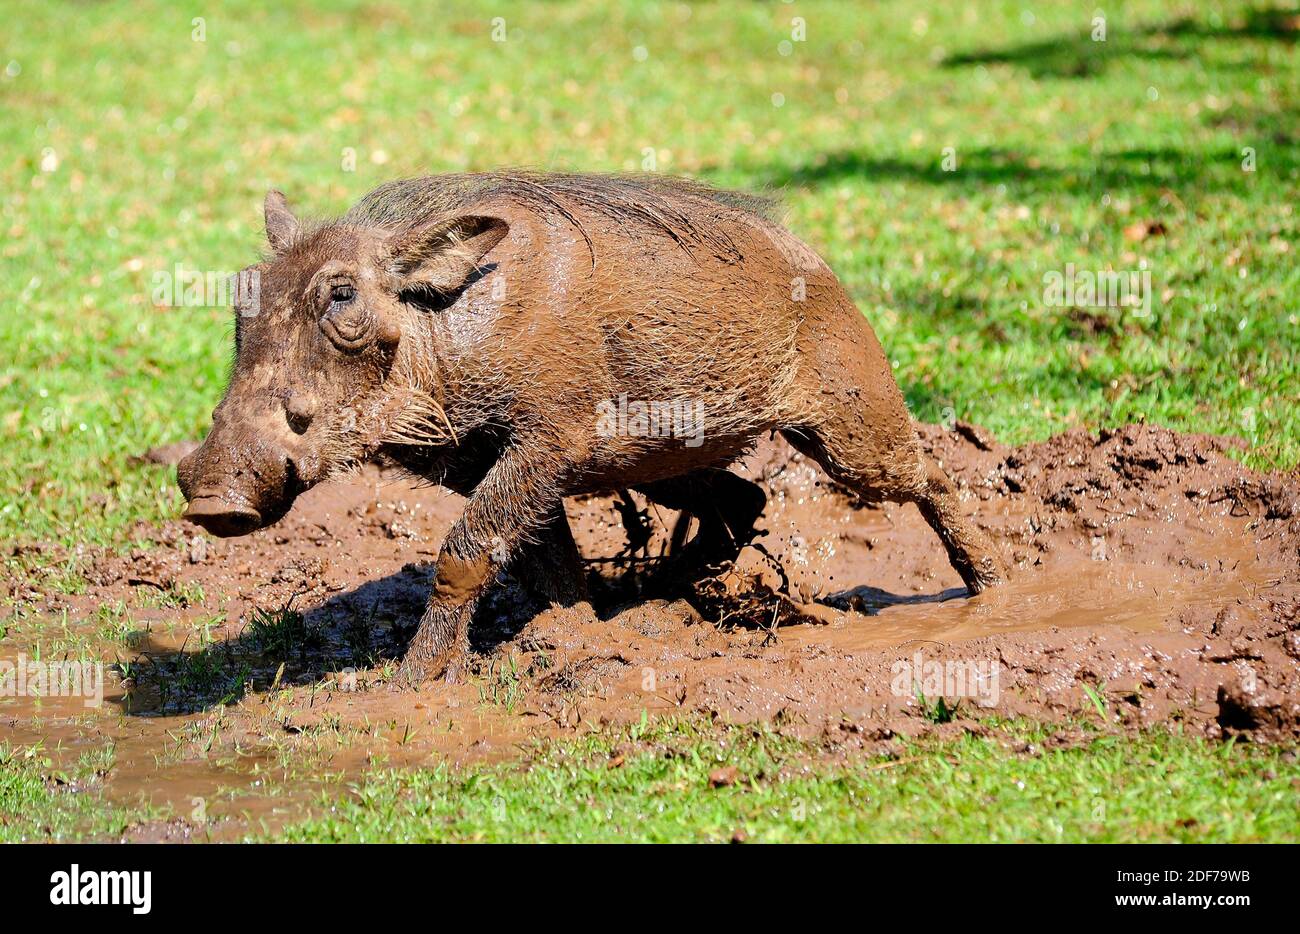 Der Warzenschwein (Phaecochoerus africanus) ist ein Warzenschwein aus dem subsaharischen Afrika. Schlammbad. Dieses Foto wurde in Namibia aufgenommen. Stockfoto